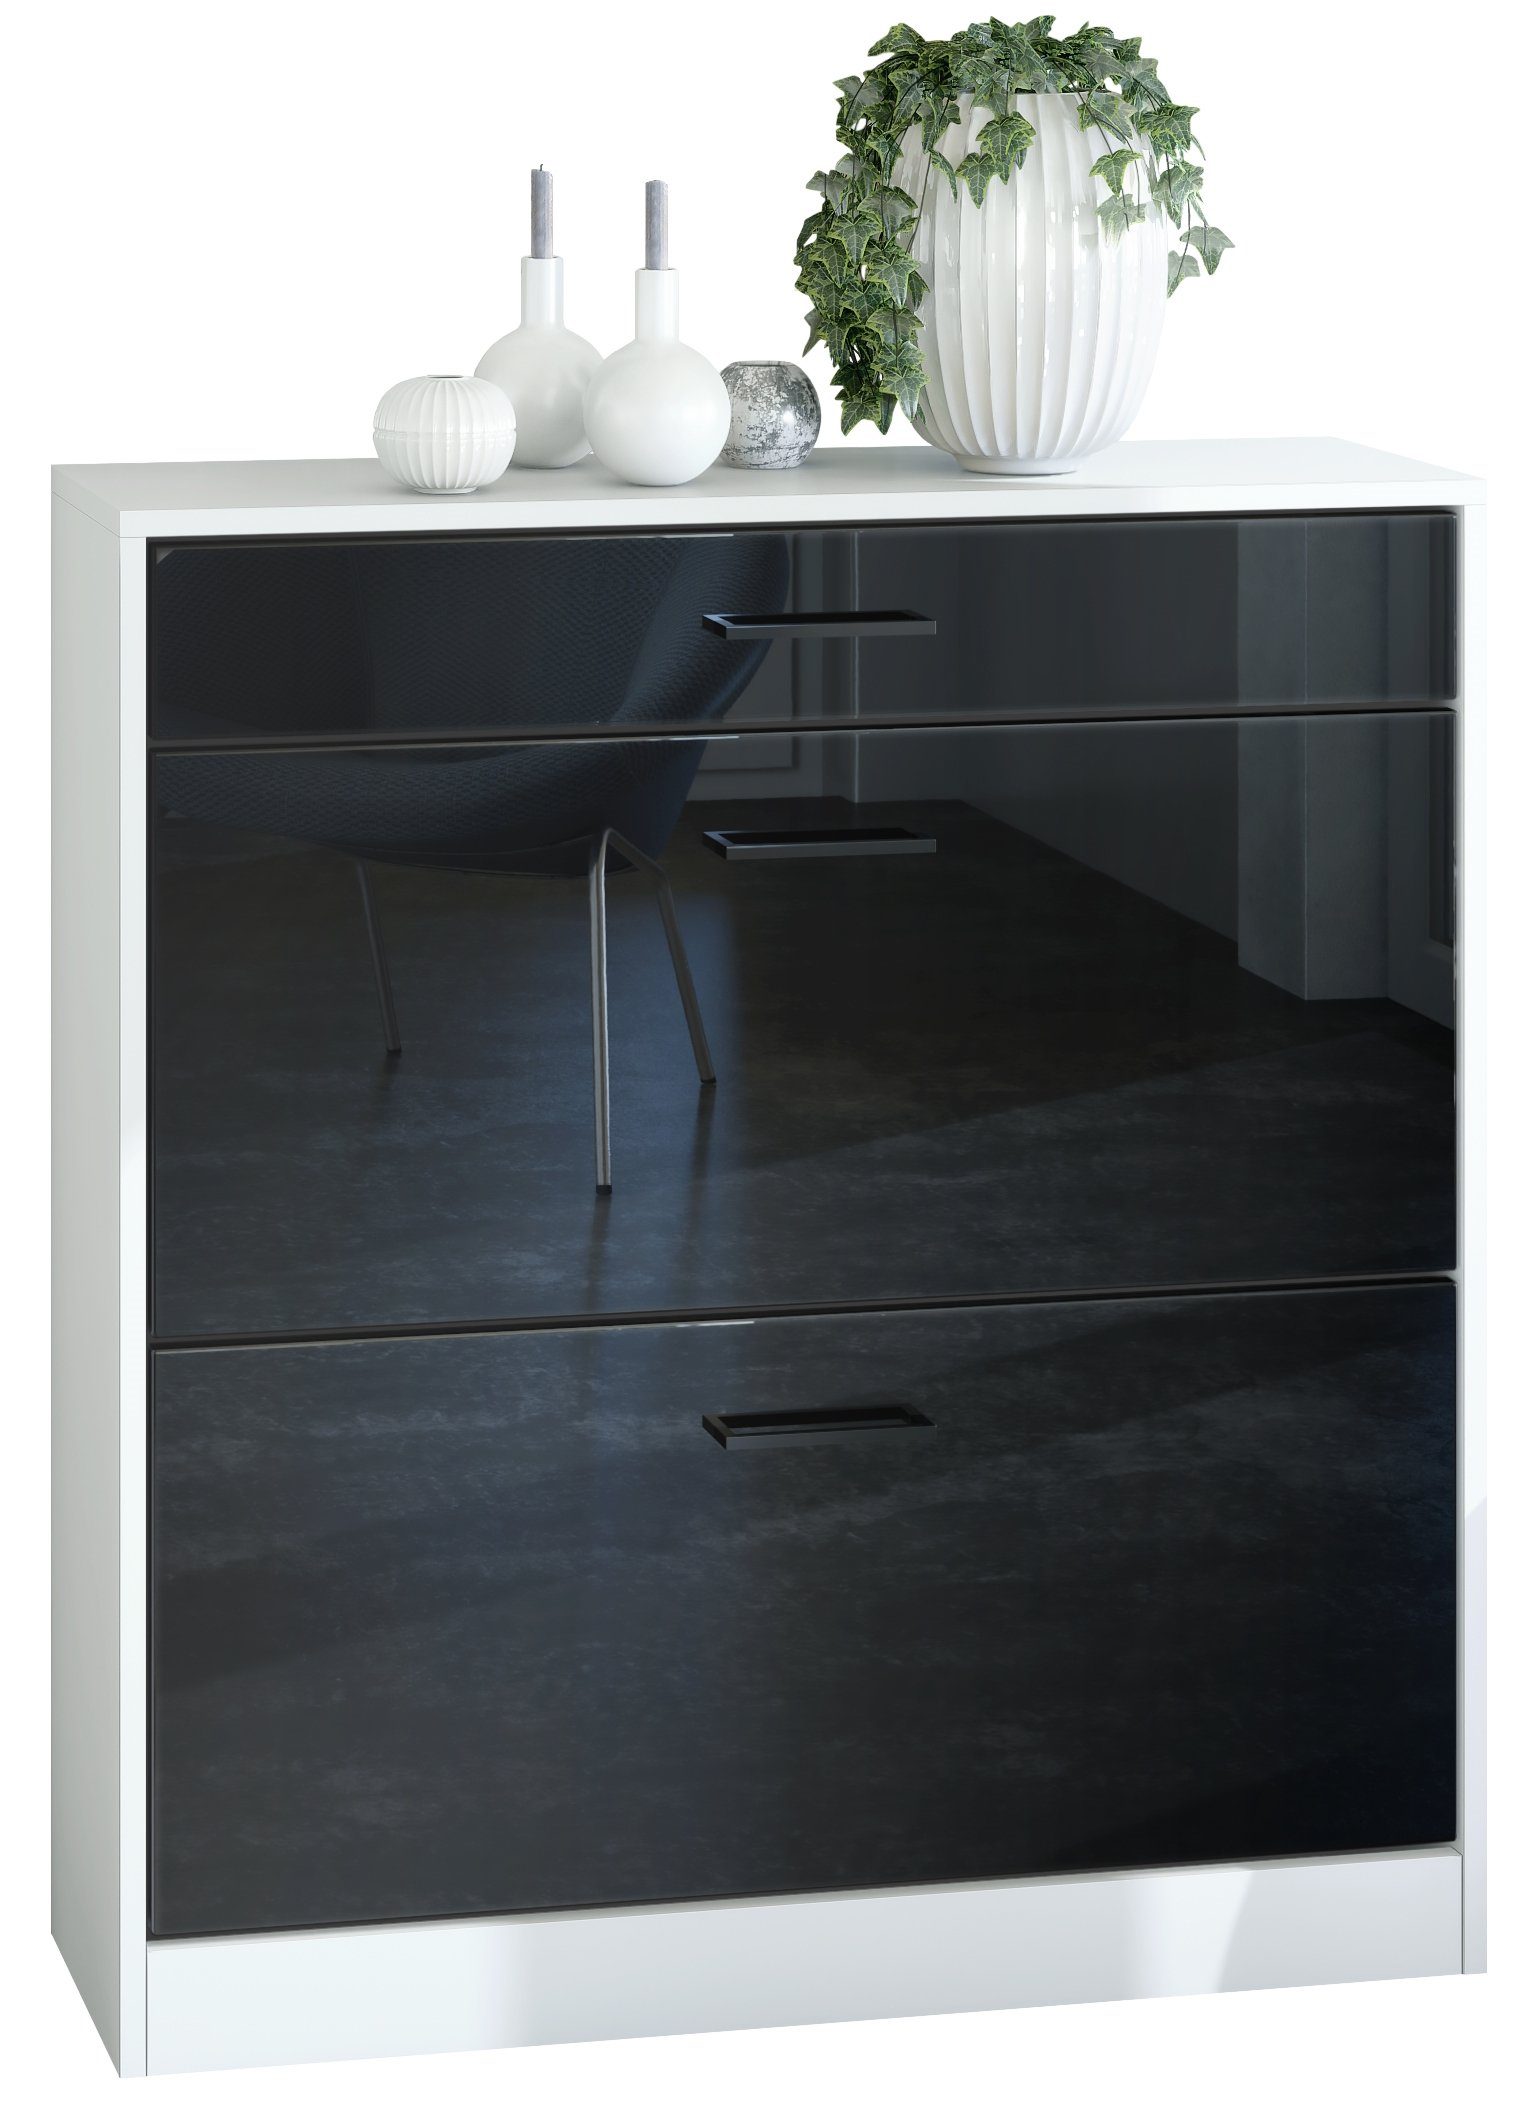 Vladon Schuhschrank Elvas (Schuhkipper, für 16 Paar Schuhe mit 2 Klappen und Schublade) Weiß matt / Schwarz Hochglanz, (89 x 95,5 x 27 cm) Front in Schwarz Hochglanz